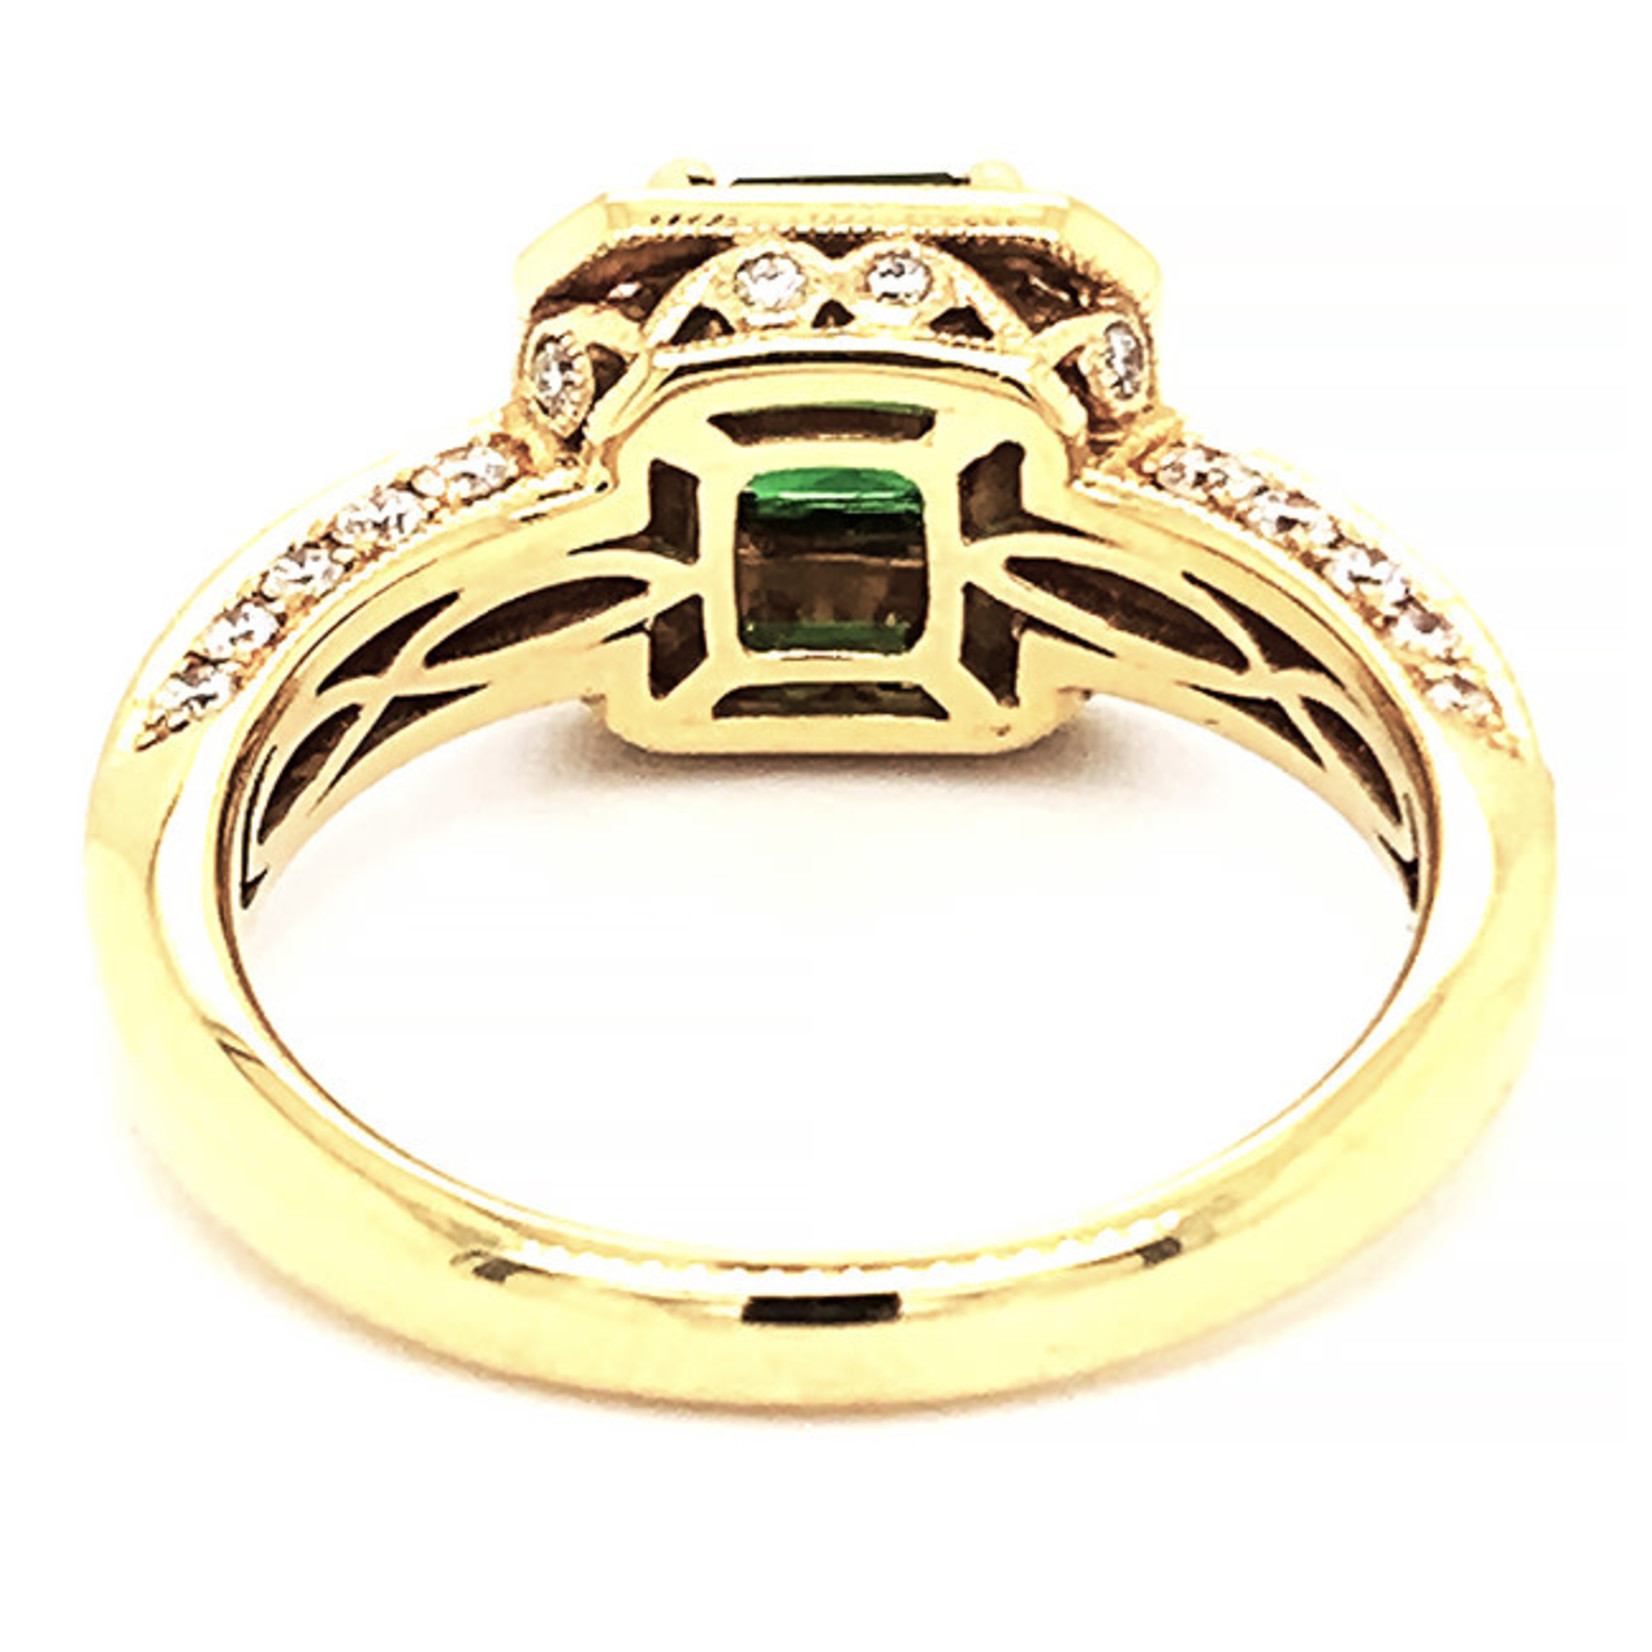 Jewelry By Danuta - Gold Drawer Tsavorite & Diamond  Gold  Ring